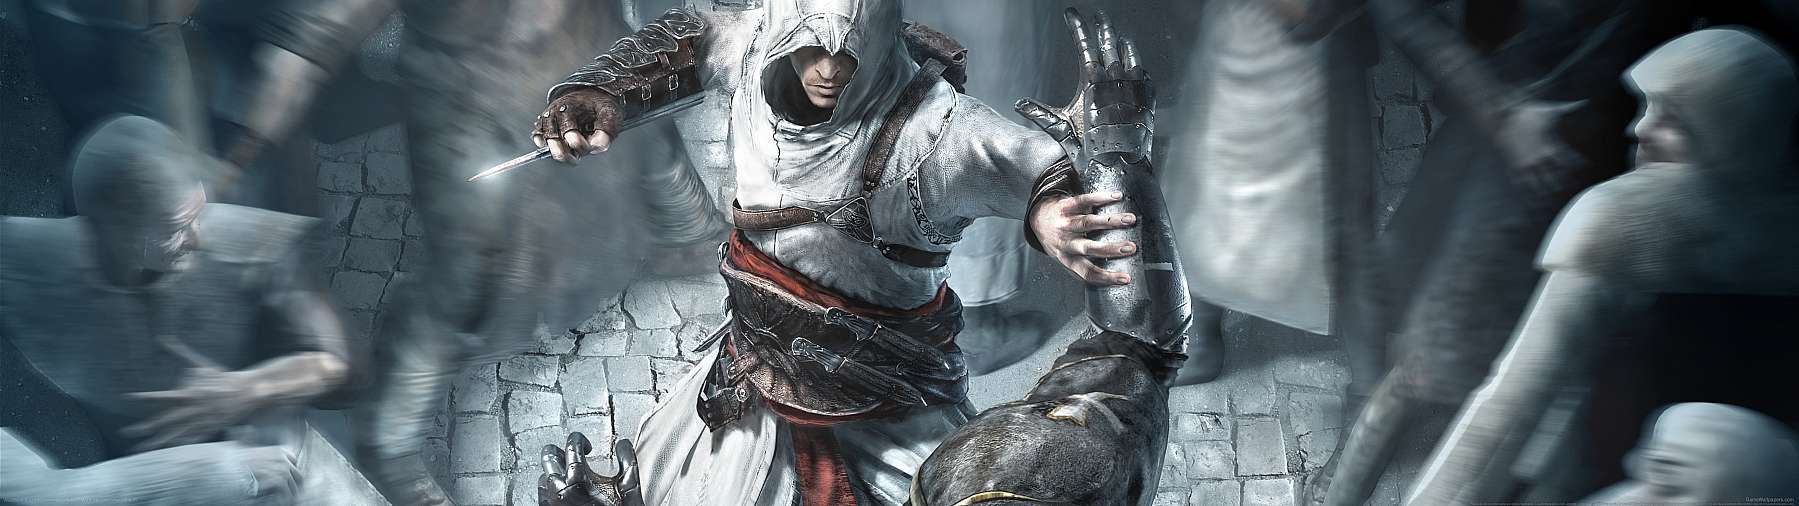 Assassin's Creed superwide fondo de escritorio 15